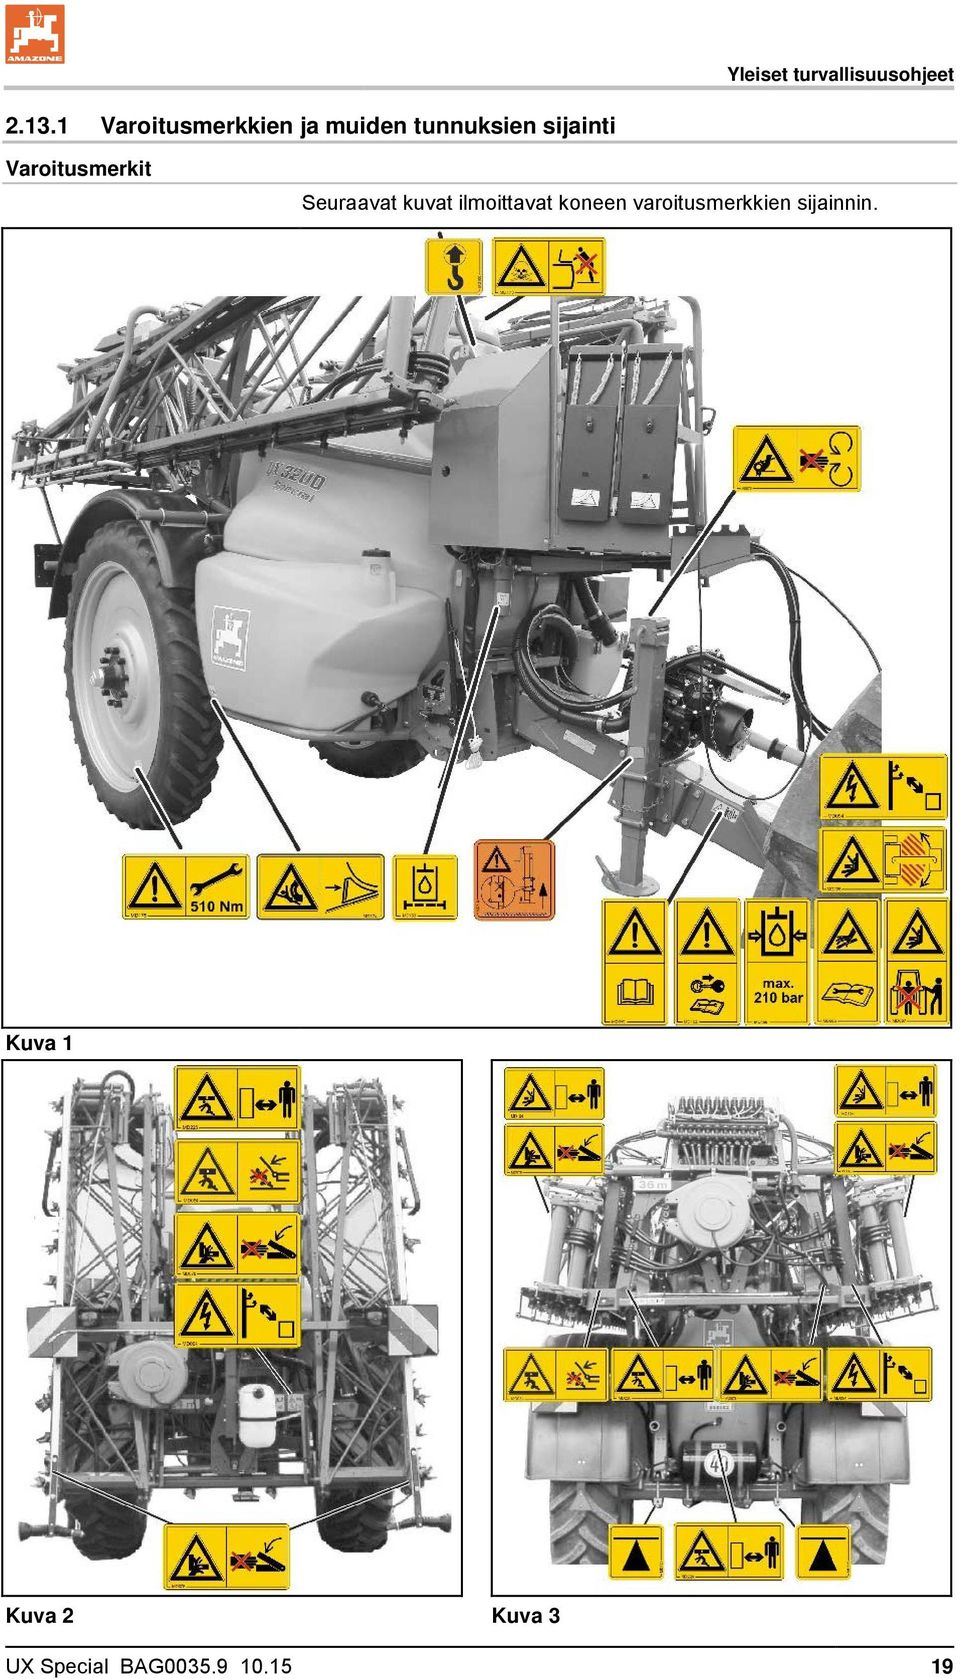 Varoitusmerkit Seuraavat kuvat ilmoittavat koneen